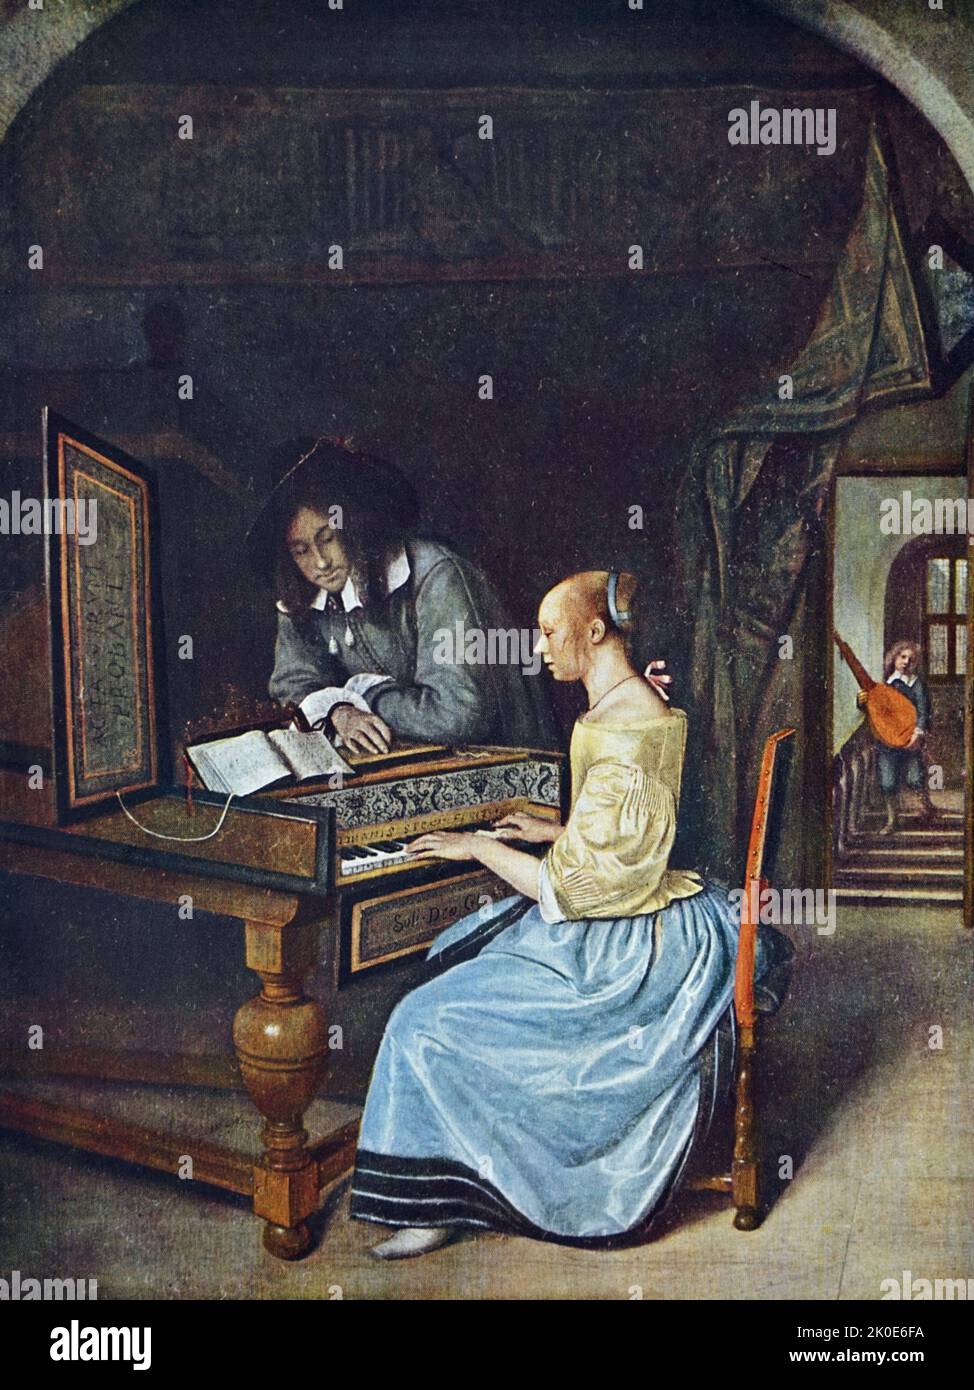 Der Musikmeister. Frau, die Klavier spielt. Theorbo im Hintergrund. Von Jan Havickszoon Steen (c. 1626 - begraben 3. Februar 1679) ein holländischer Maler des Goldenen Zeitalters. Stockfoto